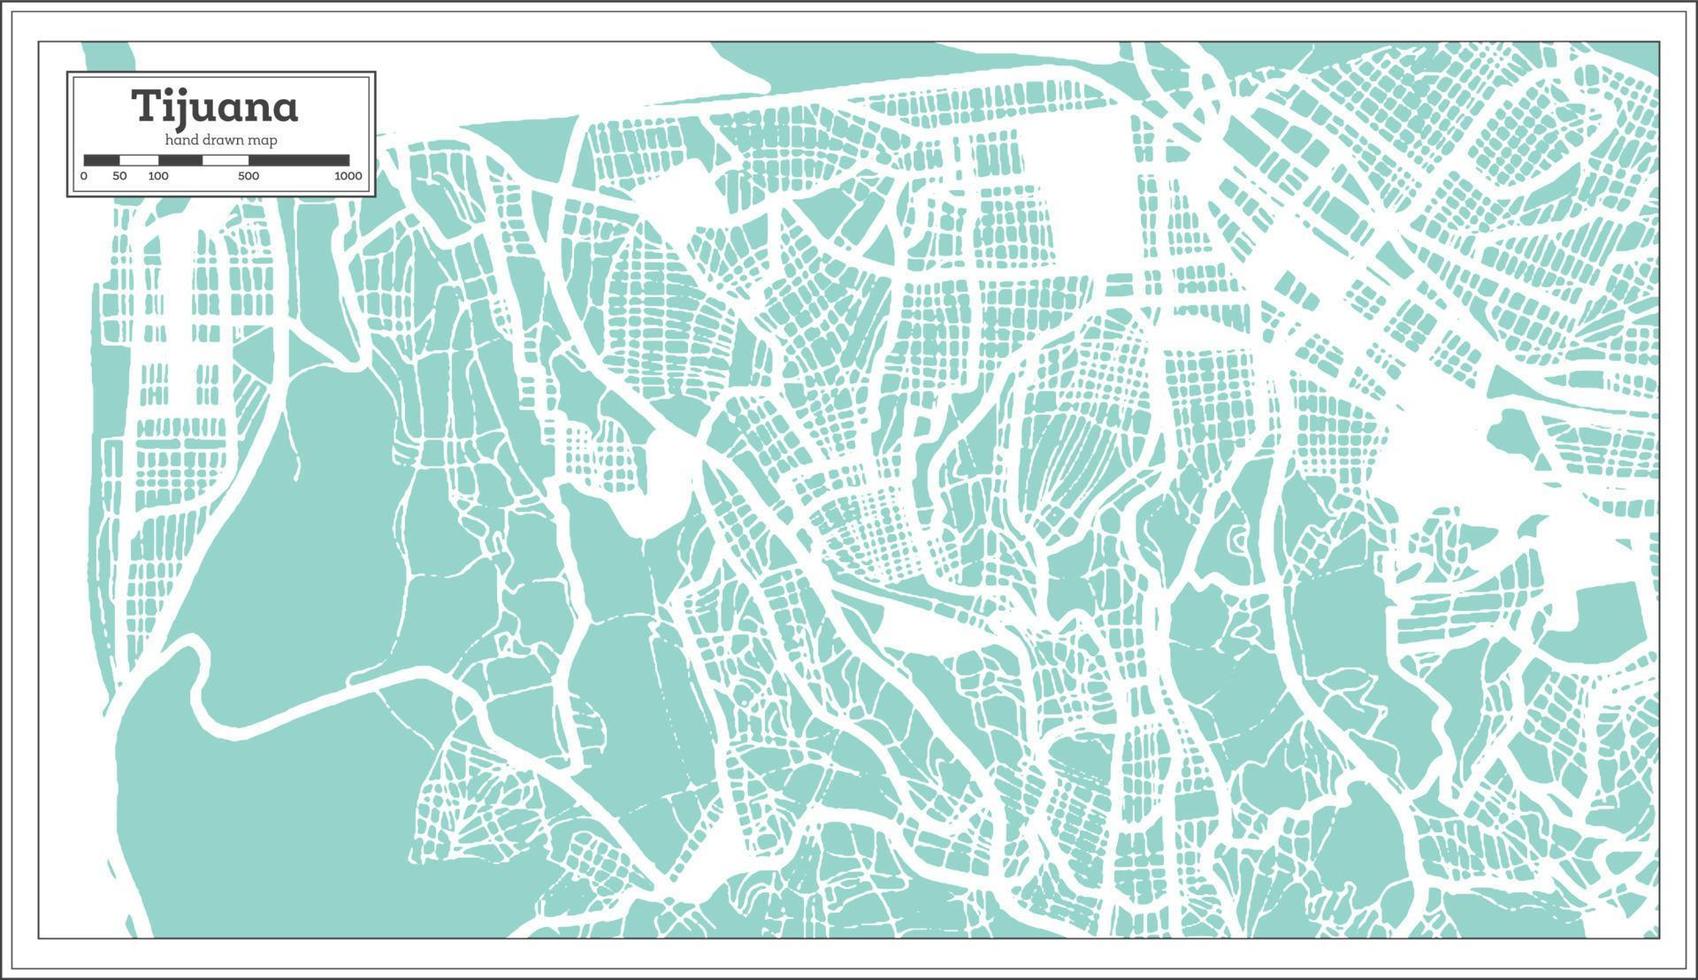 plan de la ville de tijuana au mexique dans un style rétro. carte muette. vecteur